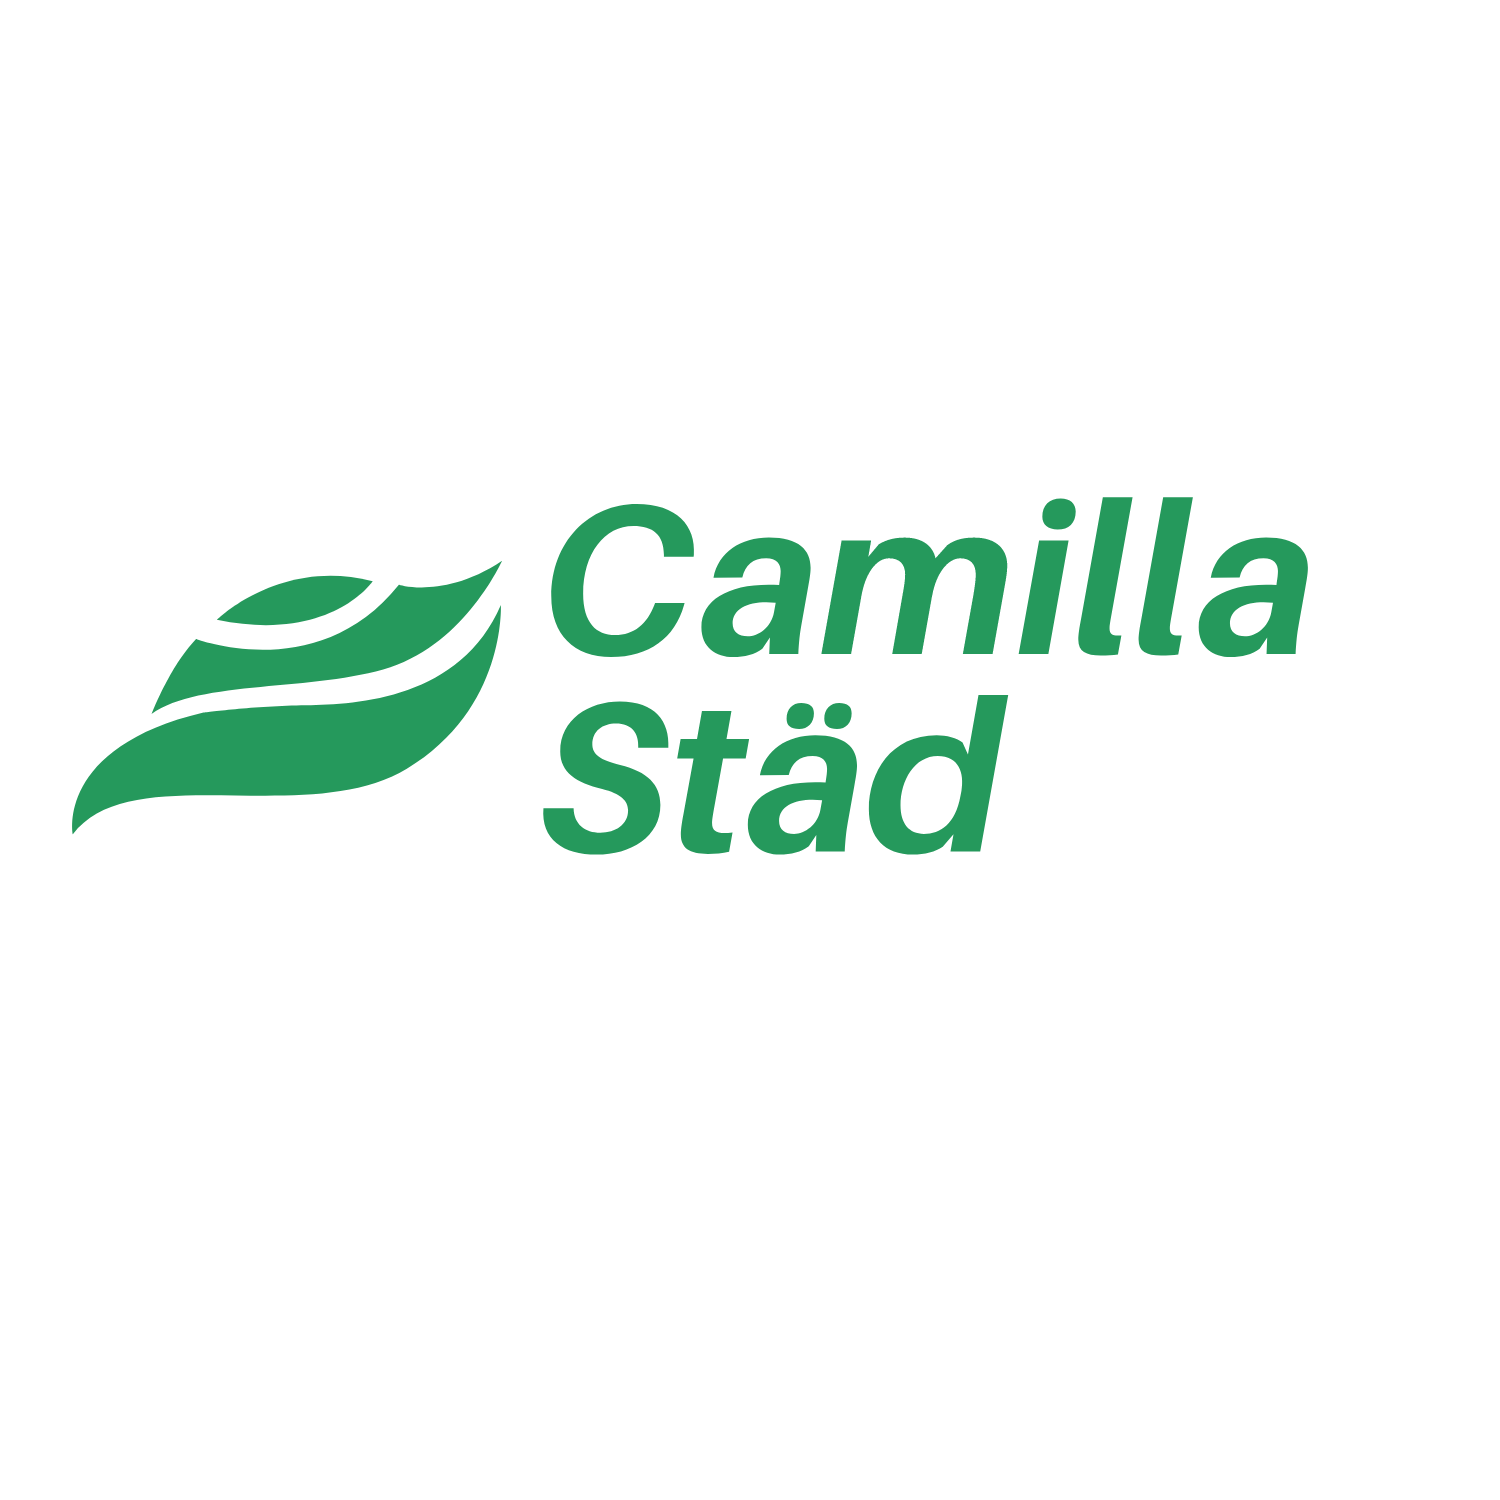 Camillas städ